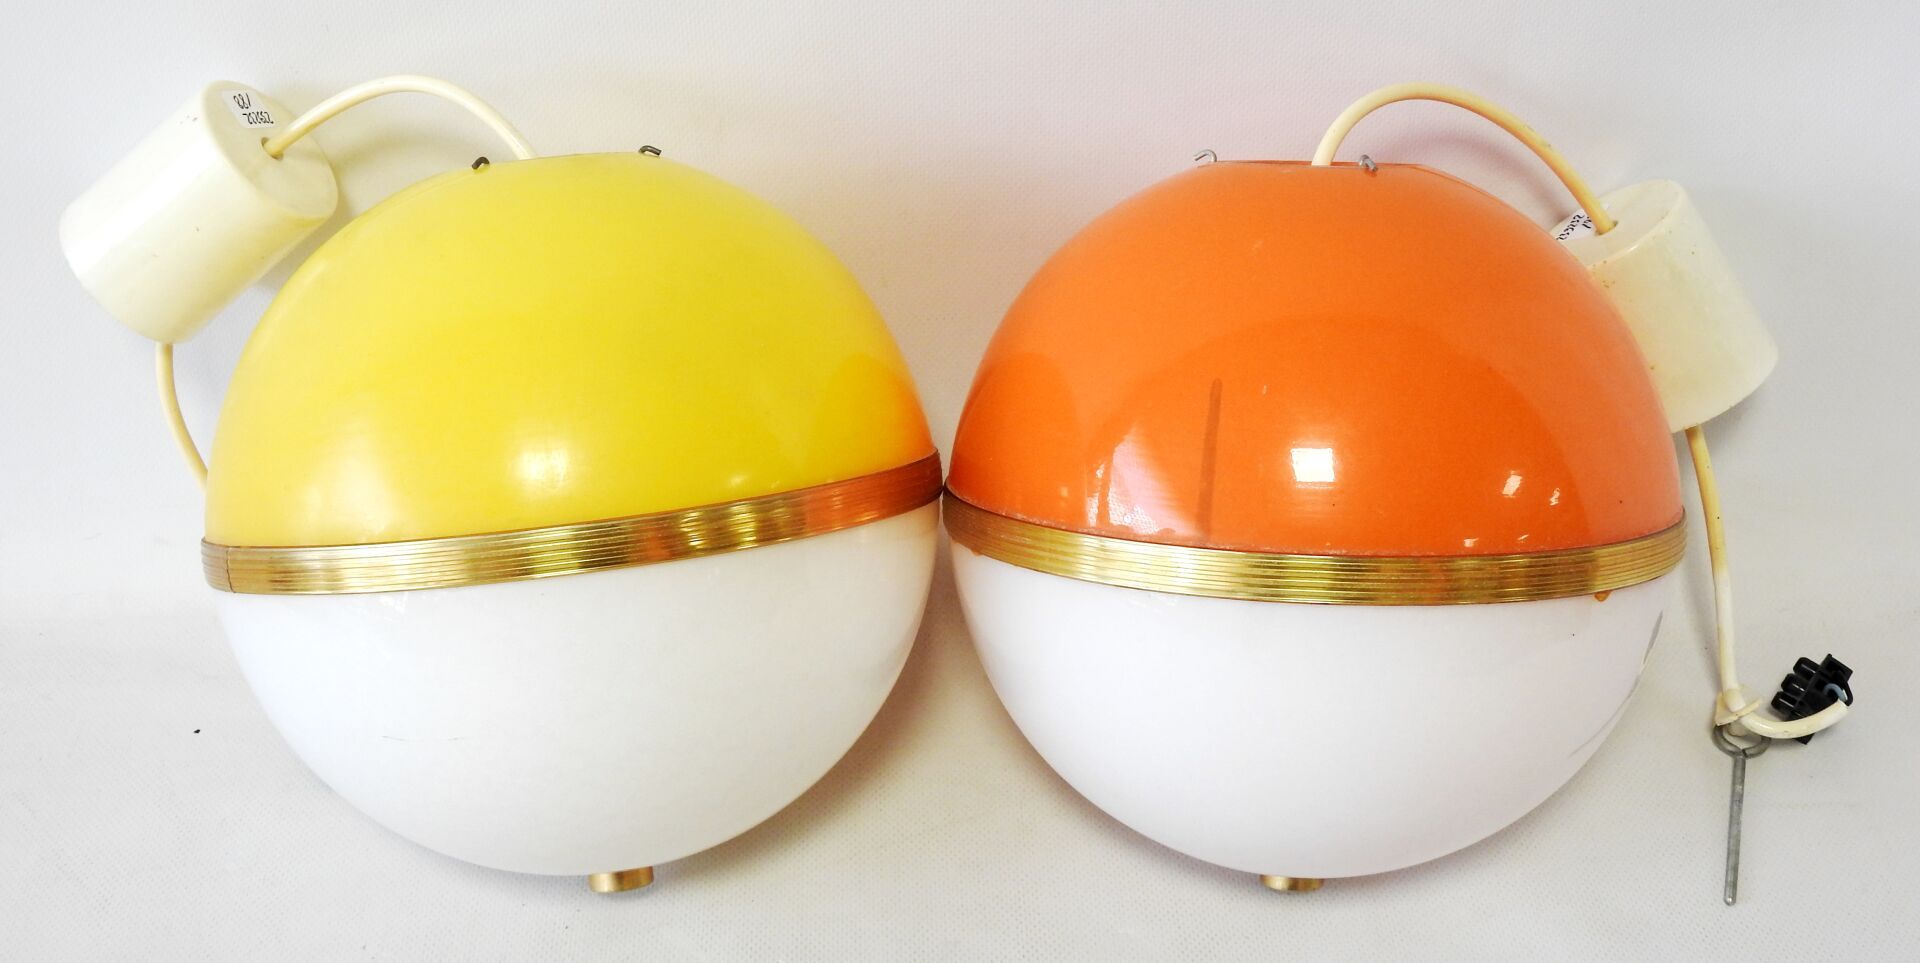 Null Obra de los años 70
Pareja de bolas de suspensión de ABS naranja, amarillo &hellip;